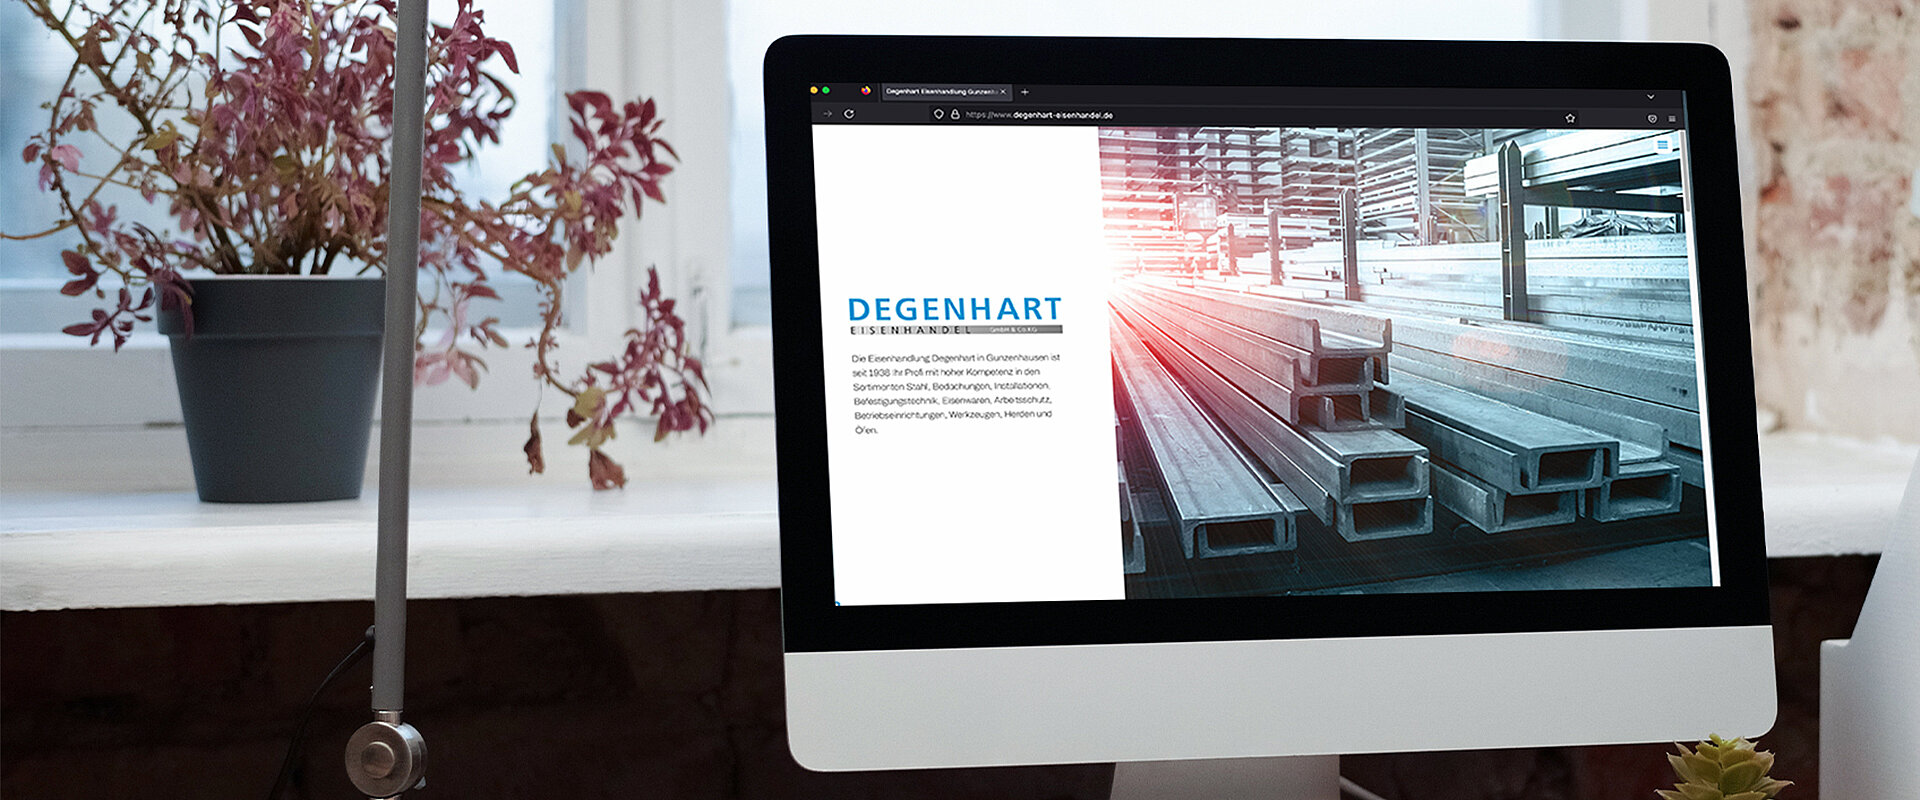 Degenhart Eisenhandel Gunzenhausen - Website & Unternehmensfotos